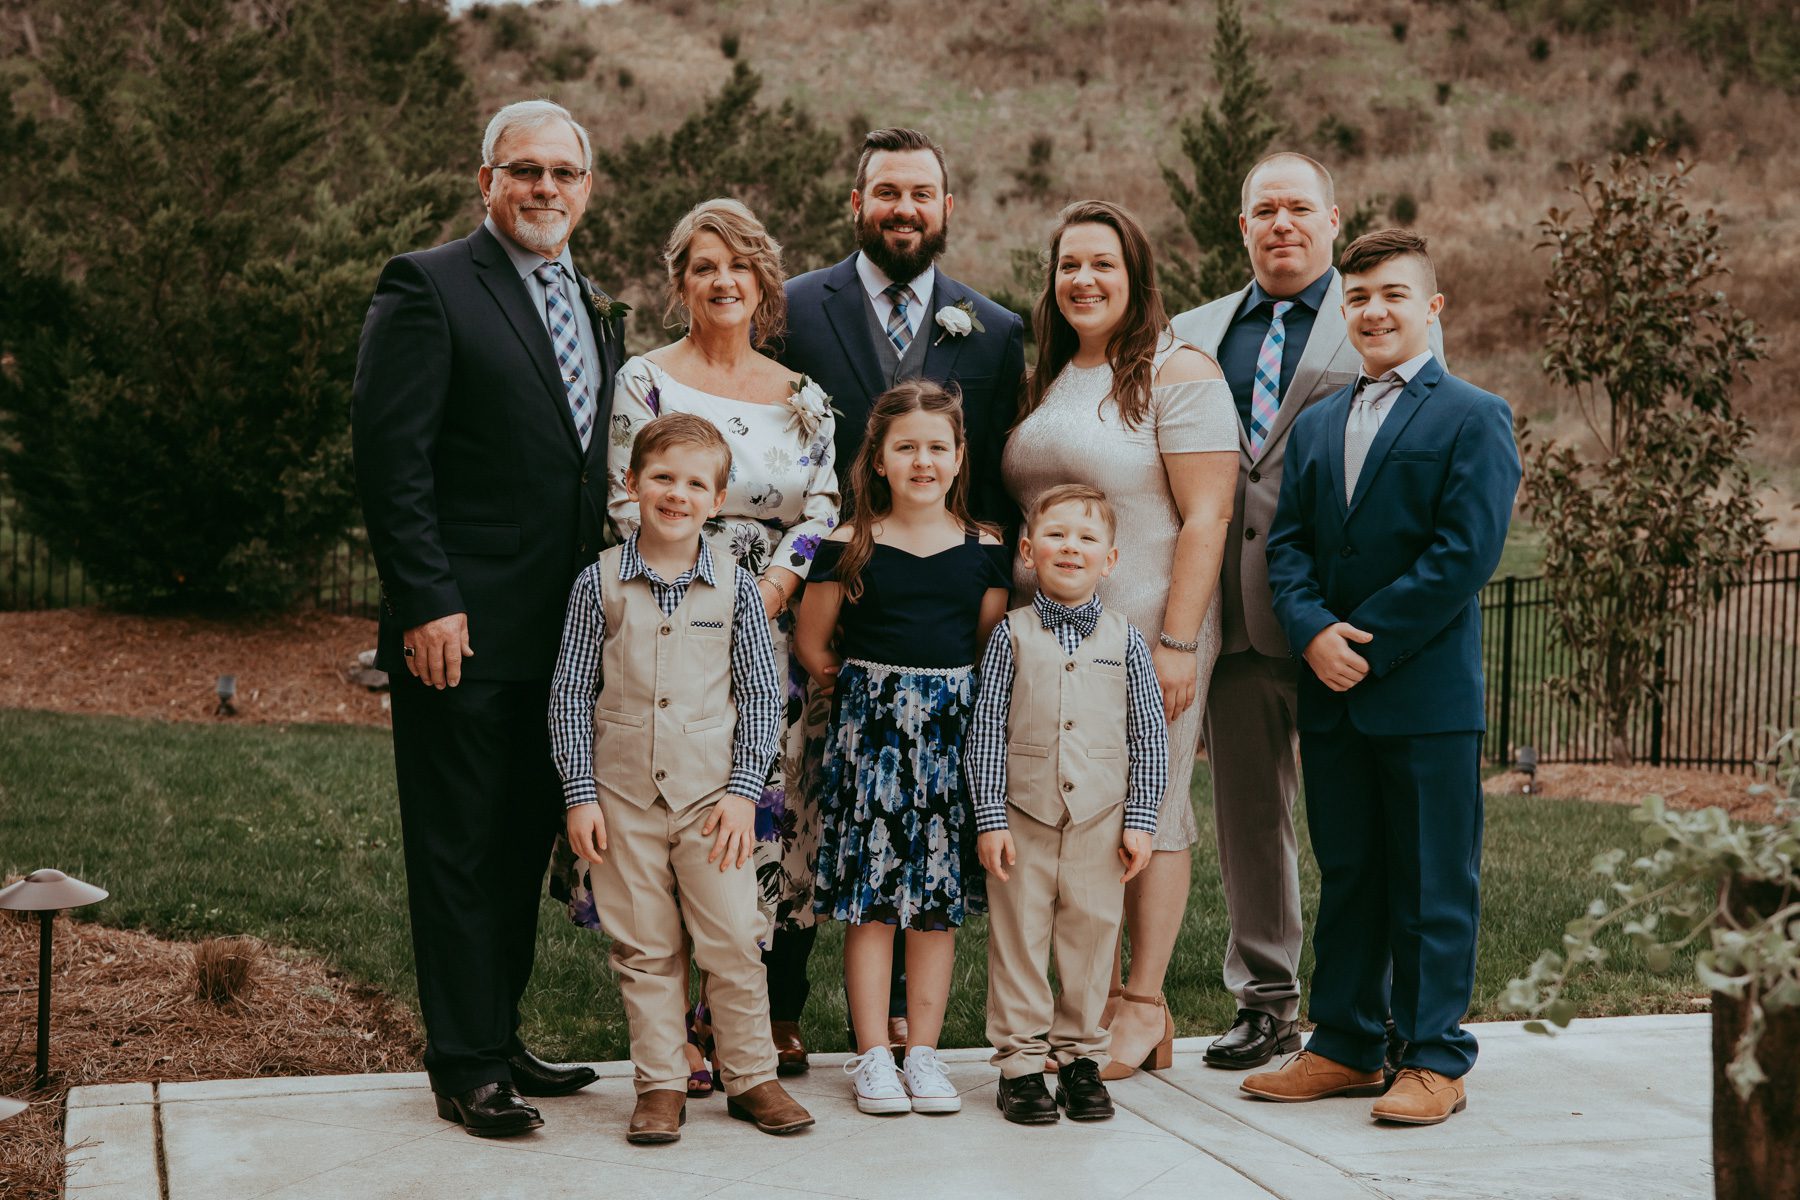 Family photos on wedding day 